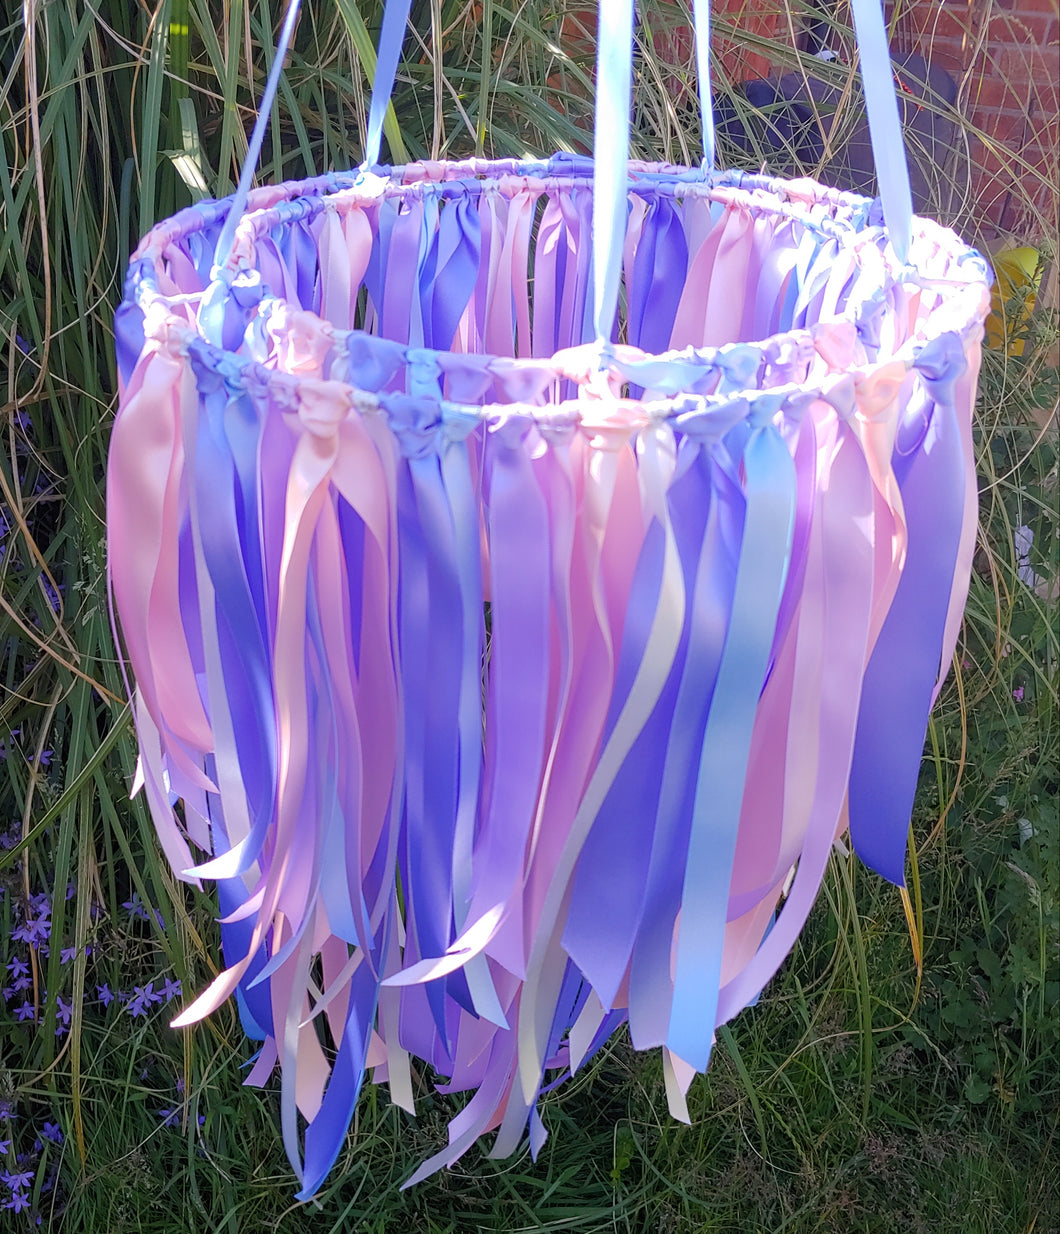 Pastel mermaid ribbon chandelier